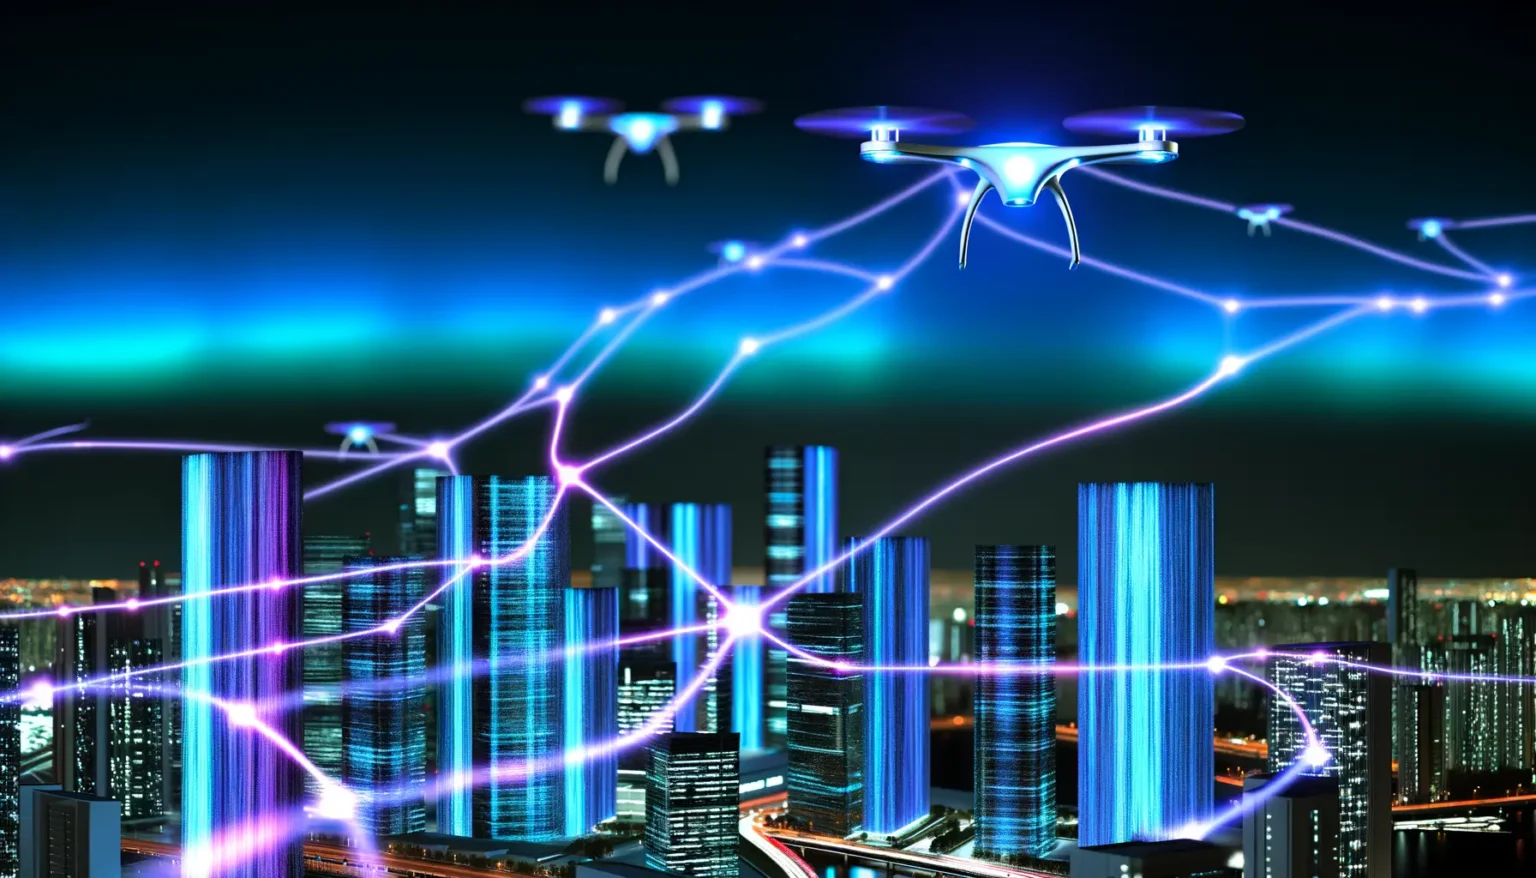 Digitale Illustration einer futuristischen Stadt bei Nacht mit beleuchteten Hochhäusern und mehreren Drohnen, die in der Luft schweben, verbunden durch leuchtende, dynamische Netzwerklinien, die Datenflüsse oder Kommunikationsverbindungen darstellen könnten.